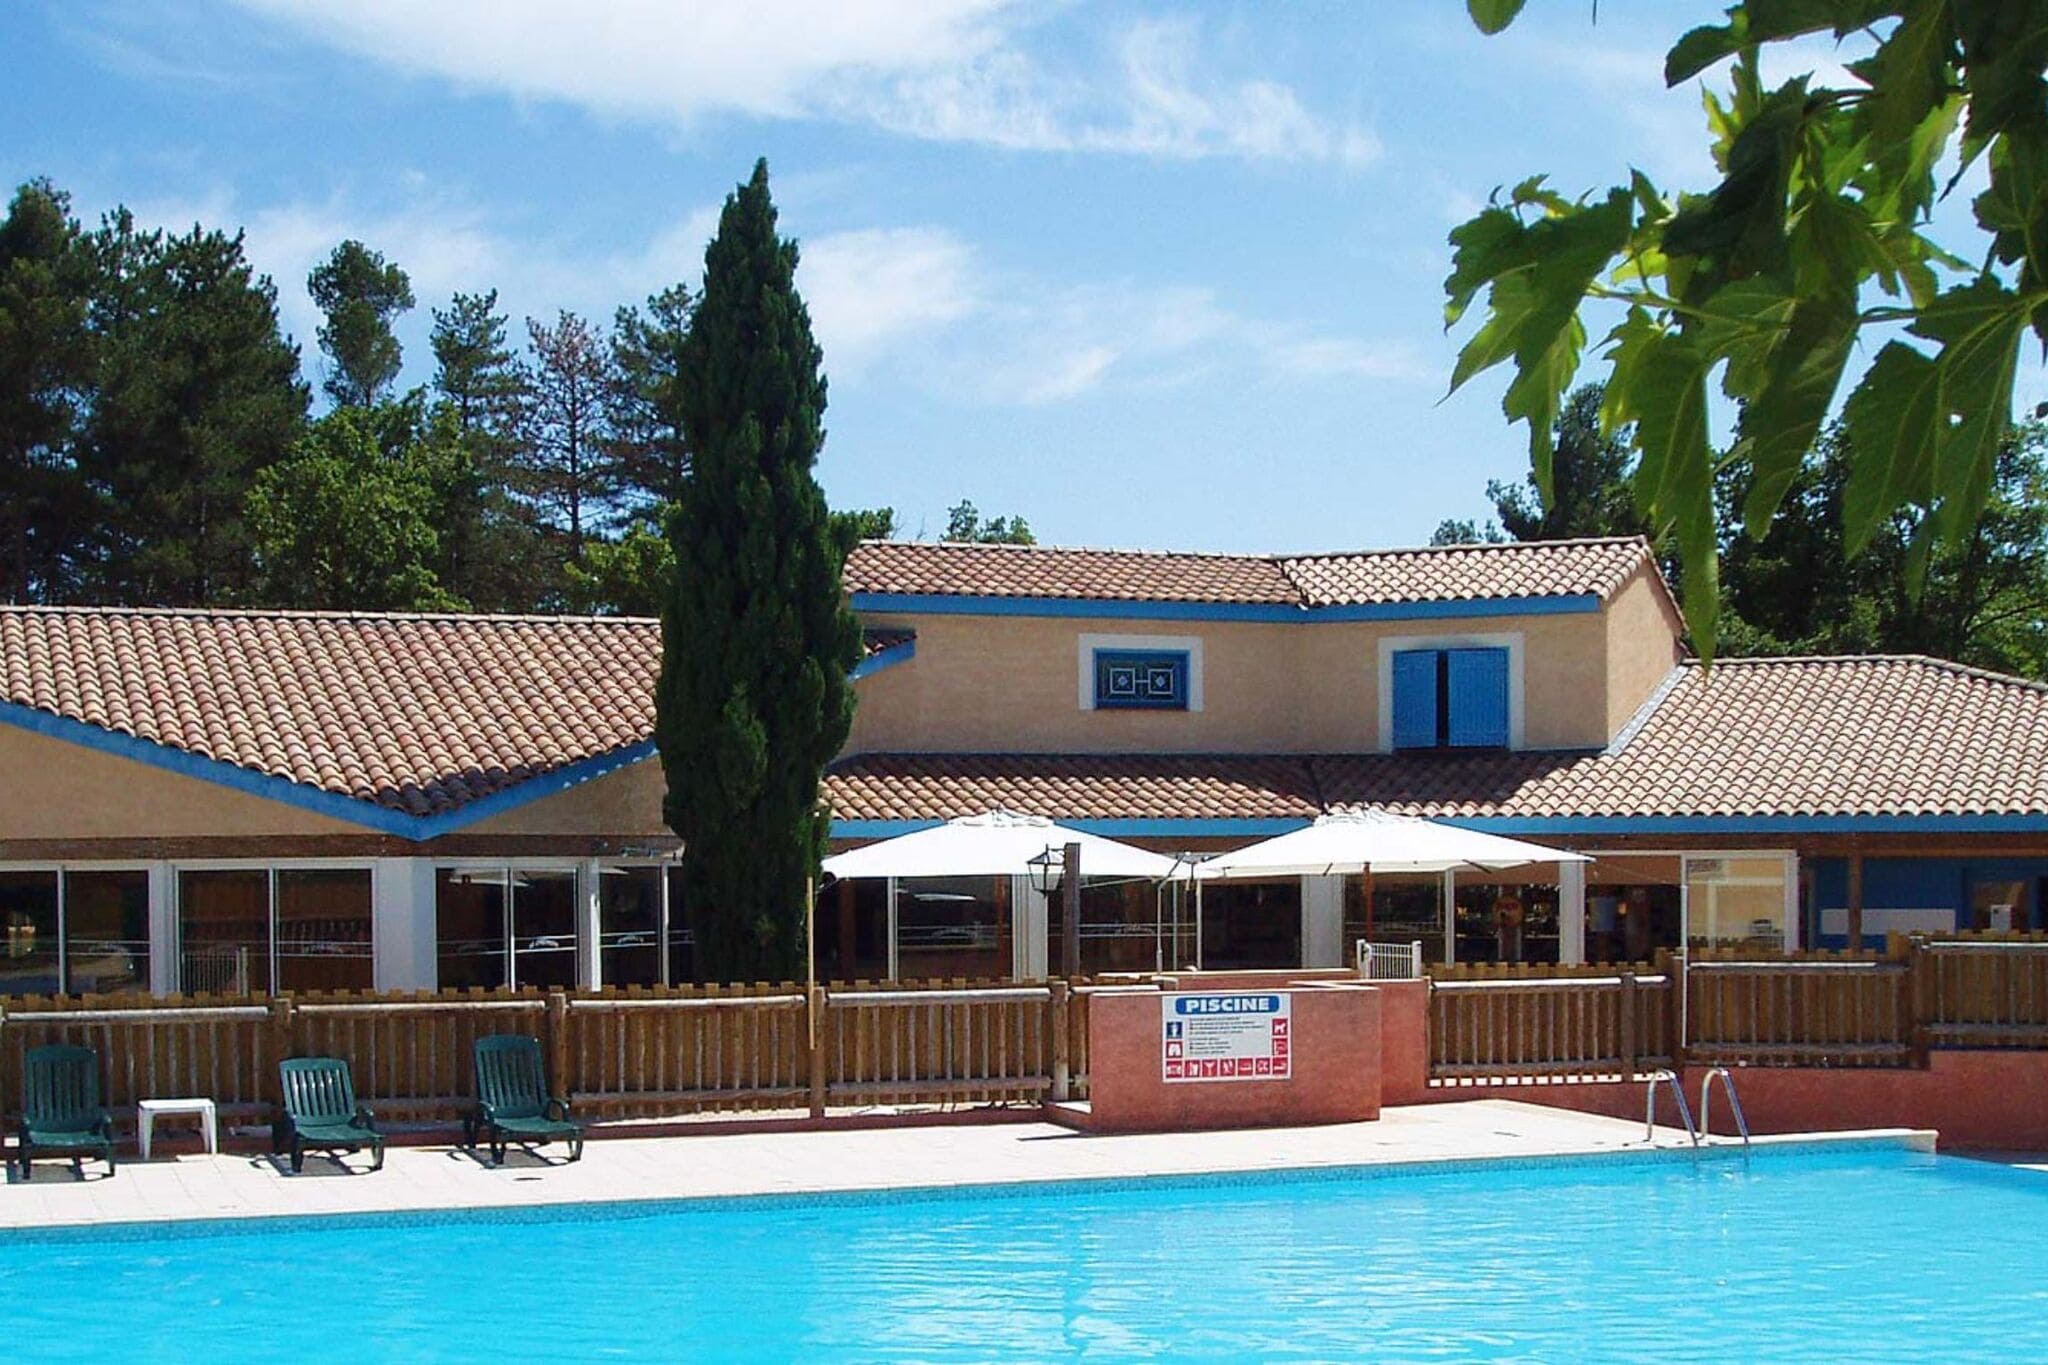 Maisonnette in Provençaalse stijl met groot gemeenschappelijk zwembad